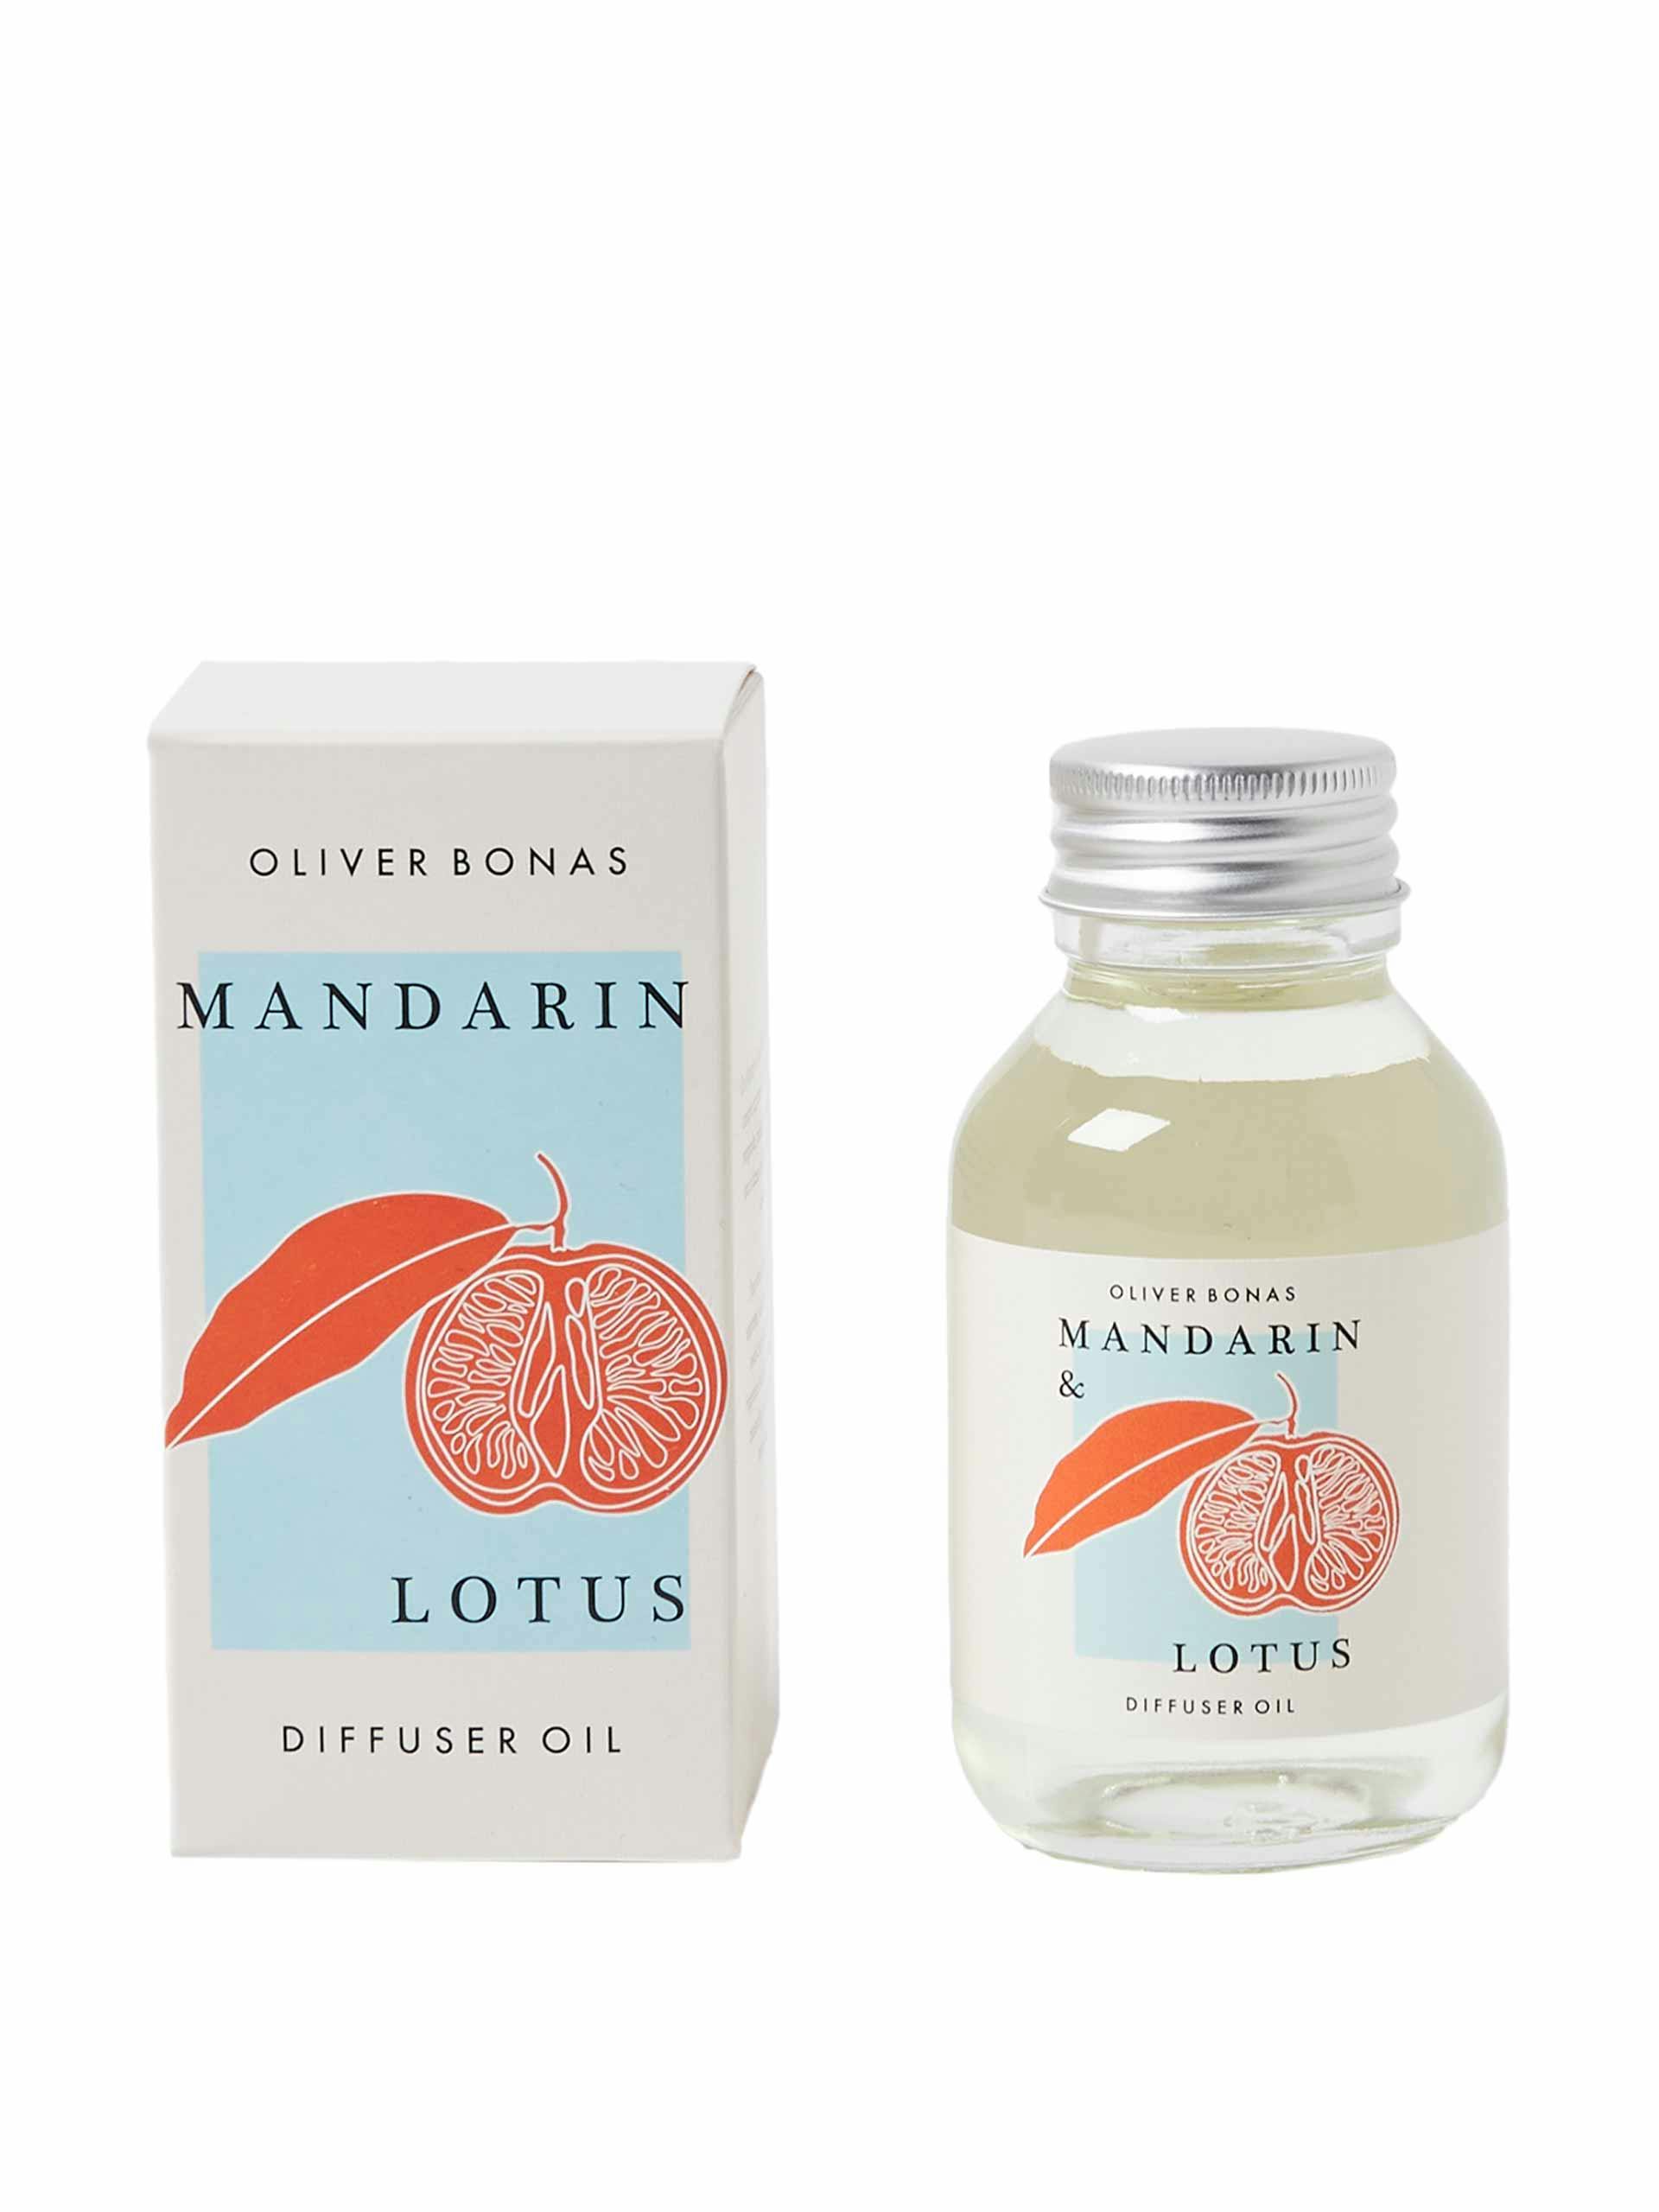 Mandarin and Lotus scented diffuser oil